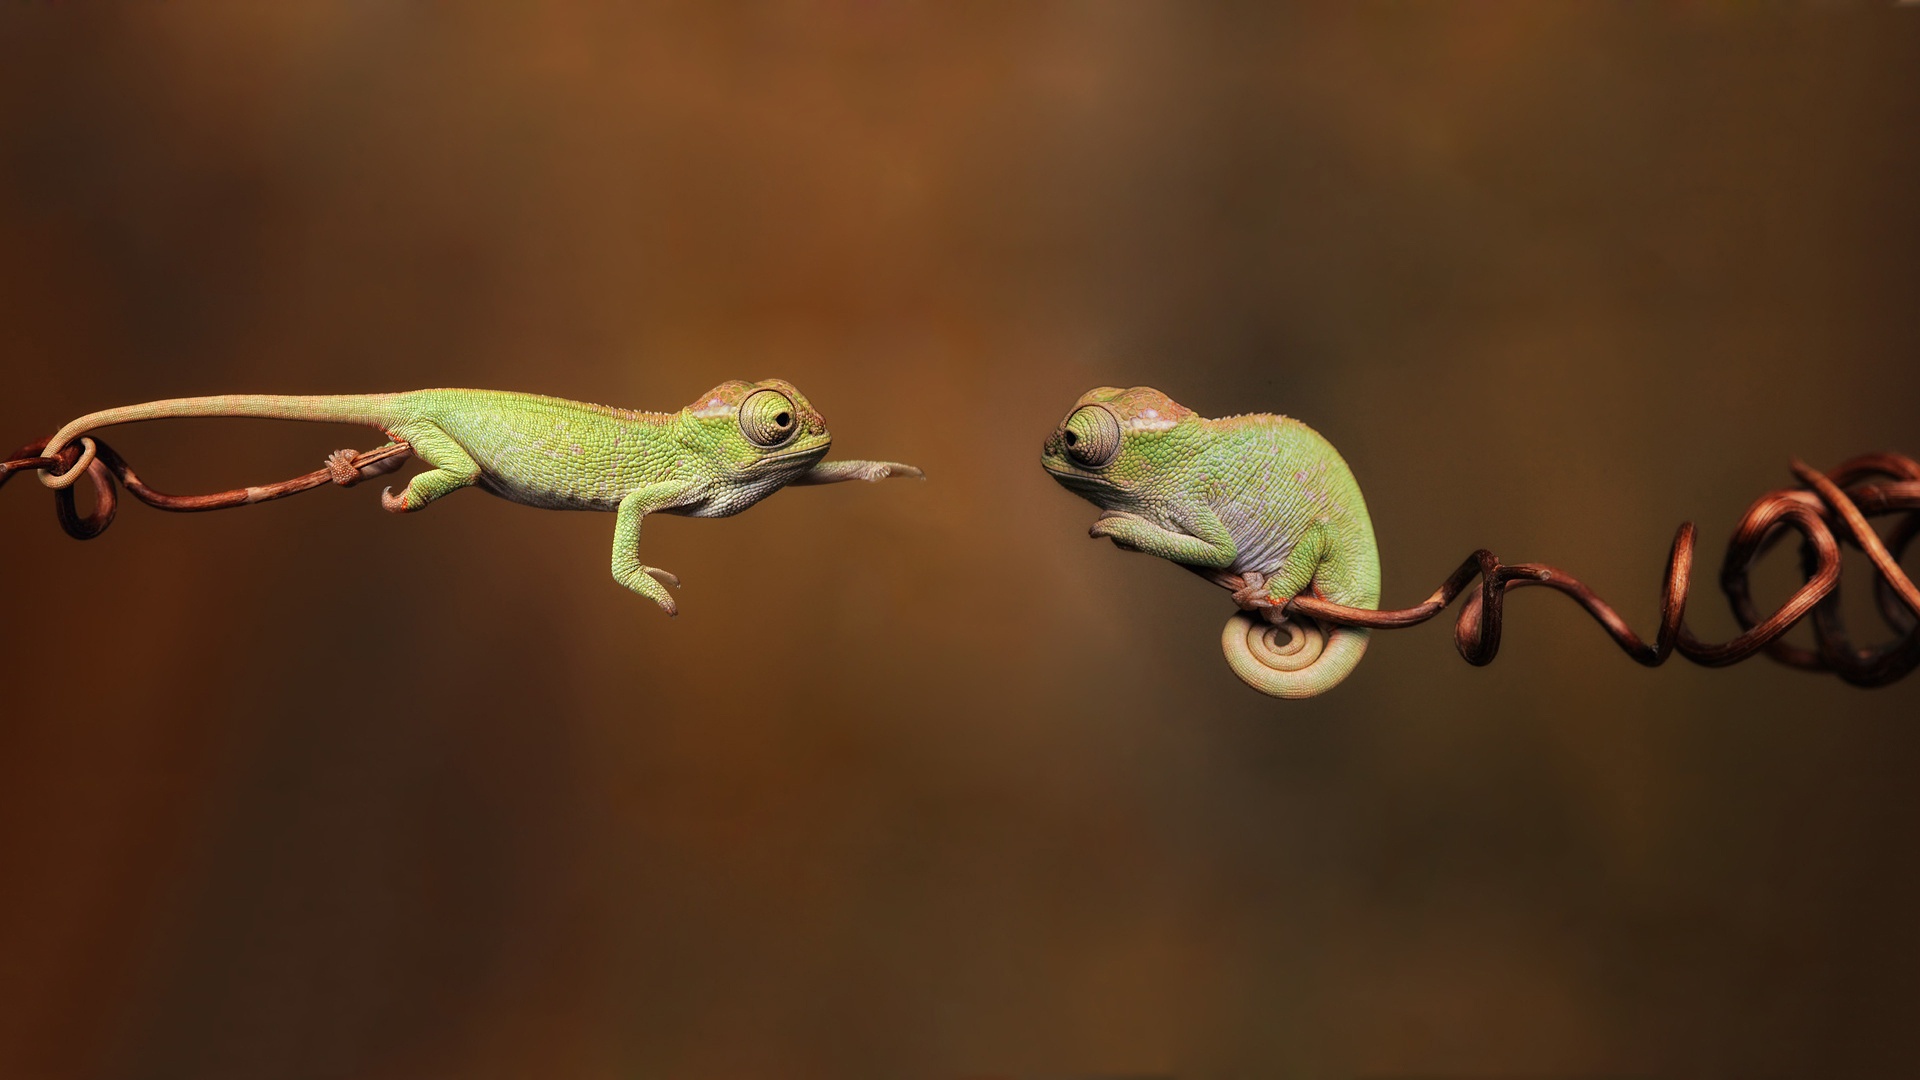 Wallpaper Cute Chameleon